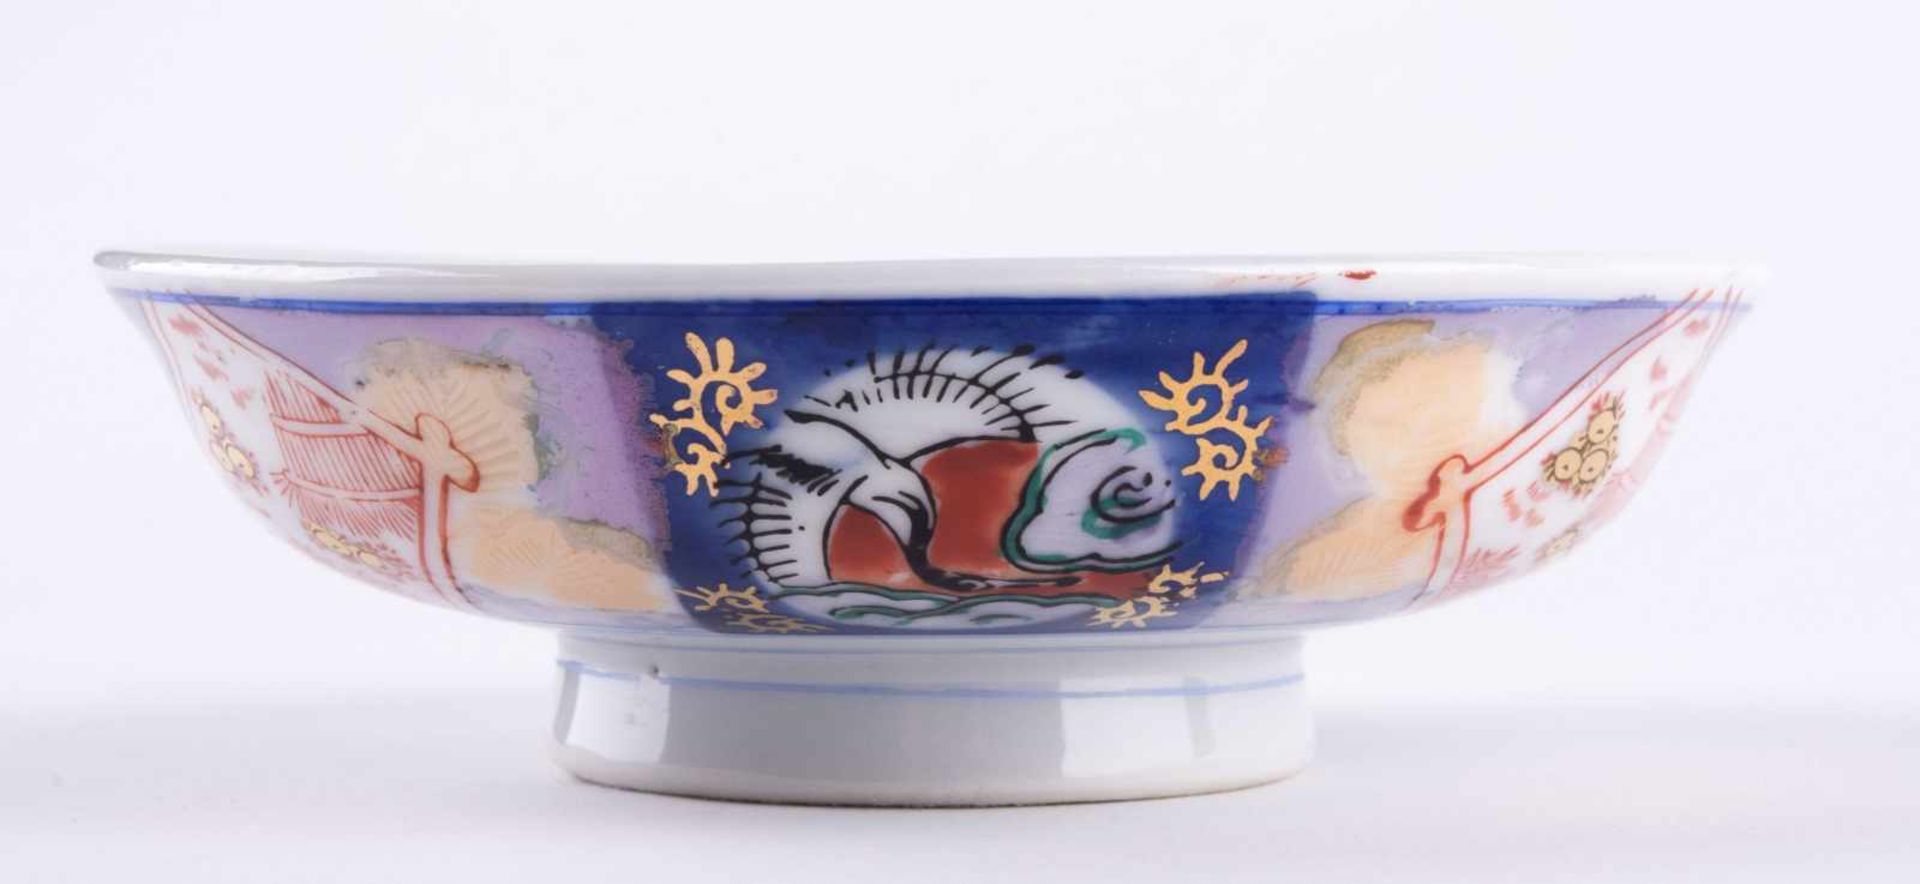 Schale Asien / Bowl, Asia farbig glasiert und Gold staffiert, Ø 14,5 cm, unterm Stand gemarkt - Bild 2 aus 6